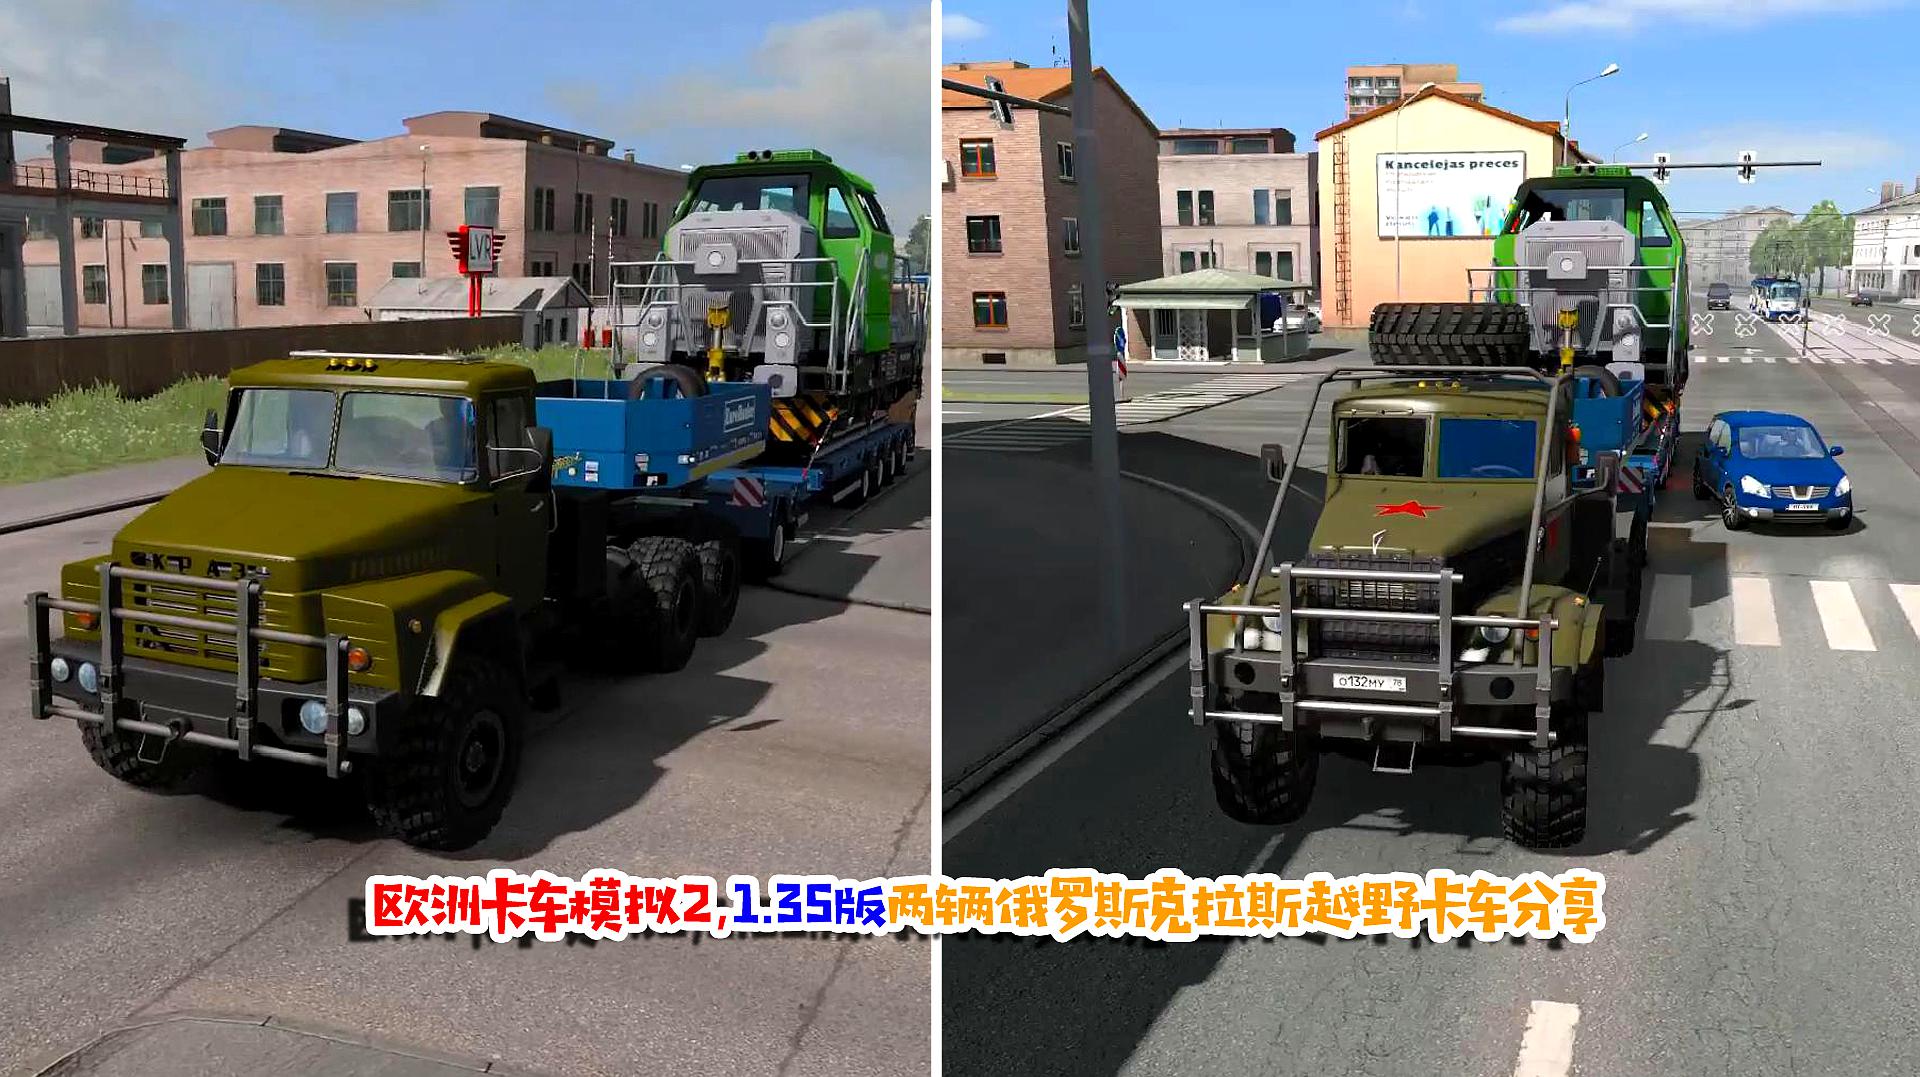 欧洲卡车模拟2,135版俄罗斯军用卡车,两辆克拉斯越野卡车分享